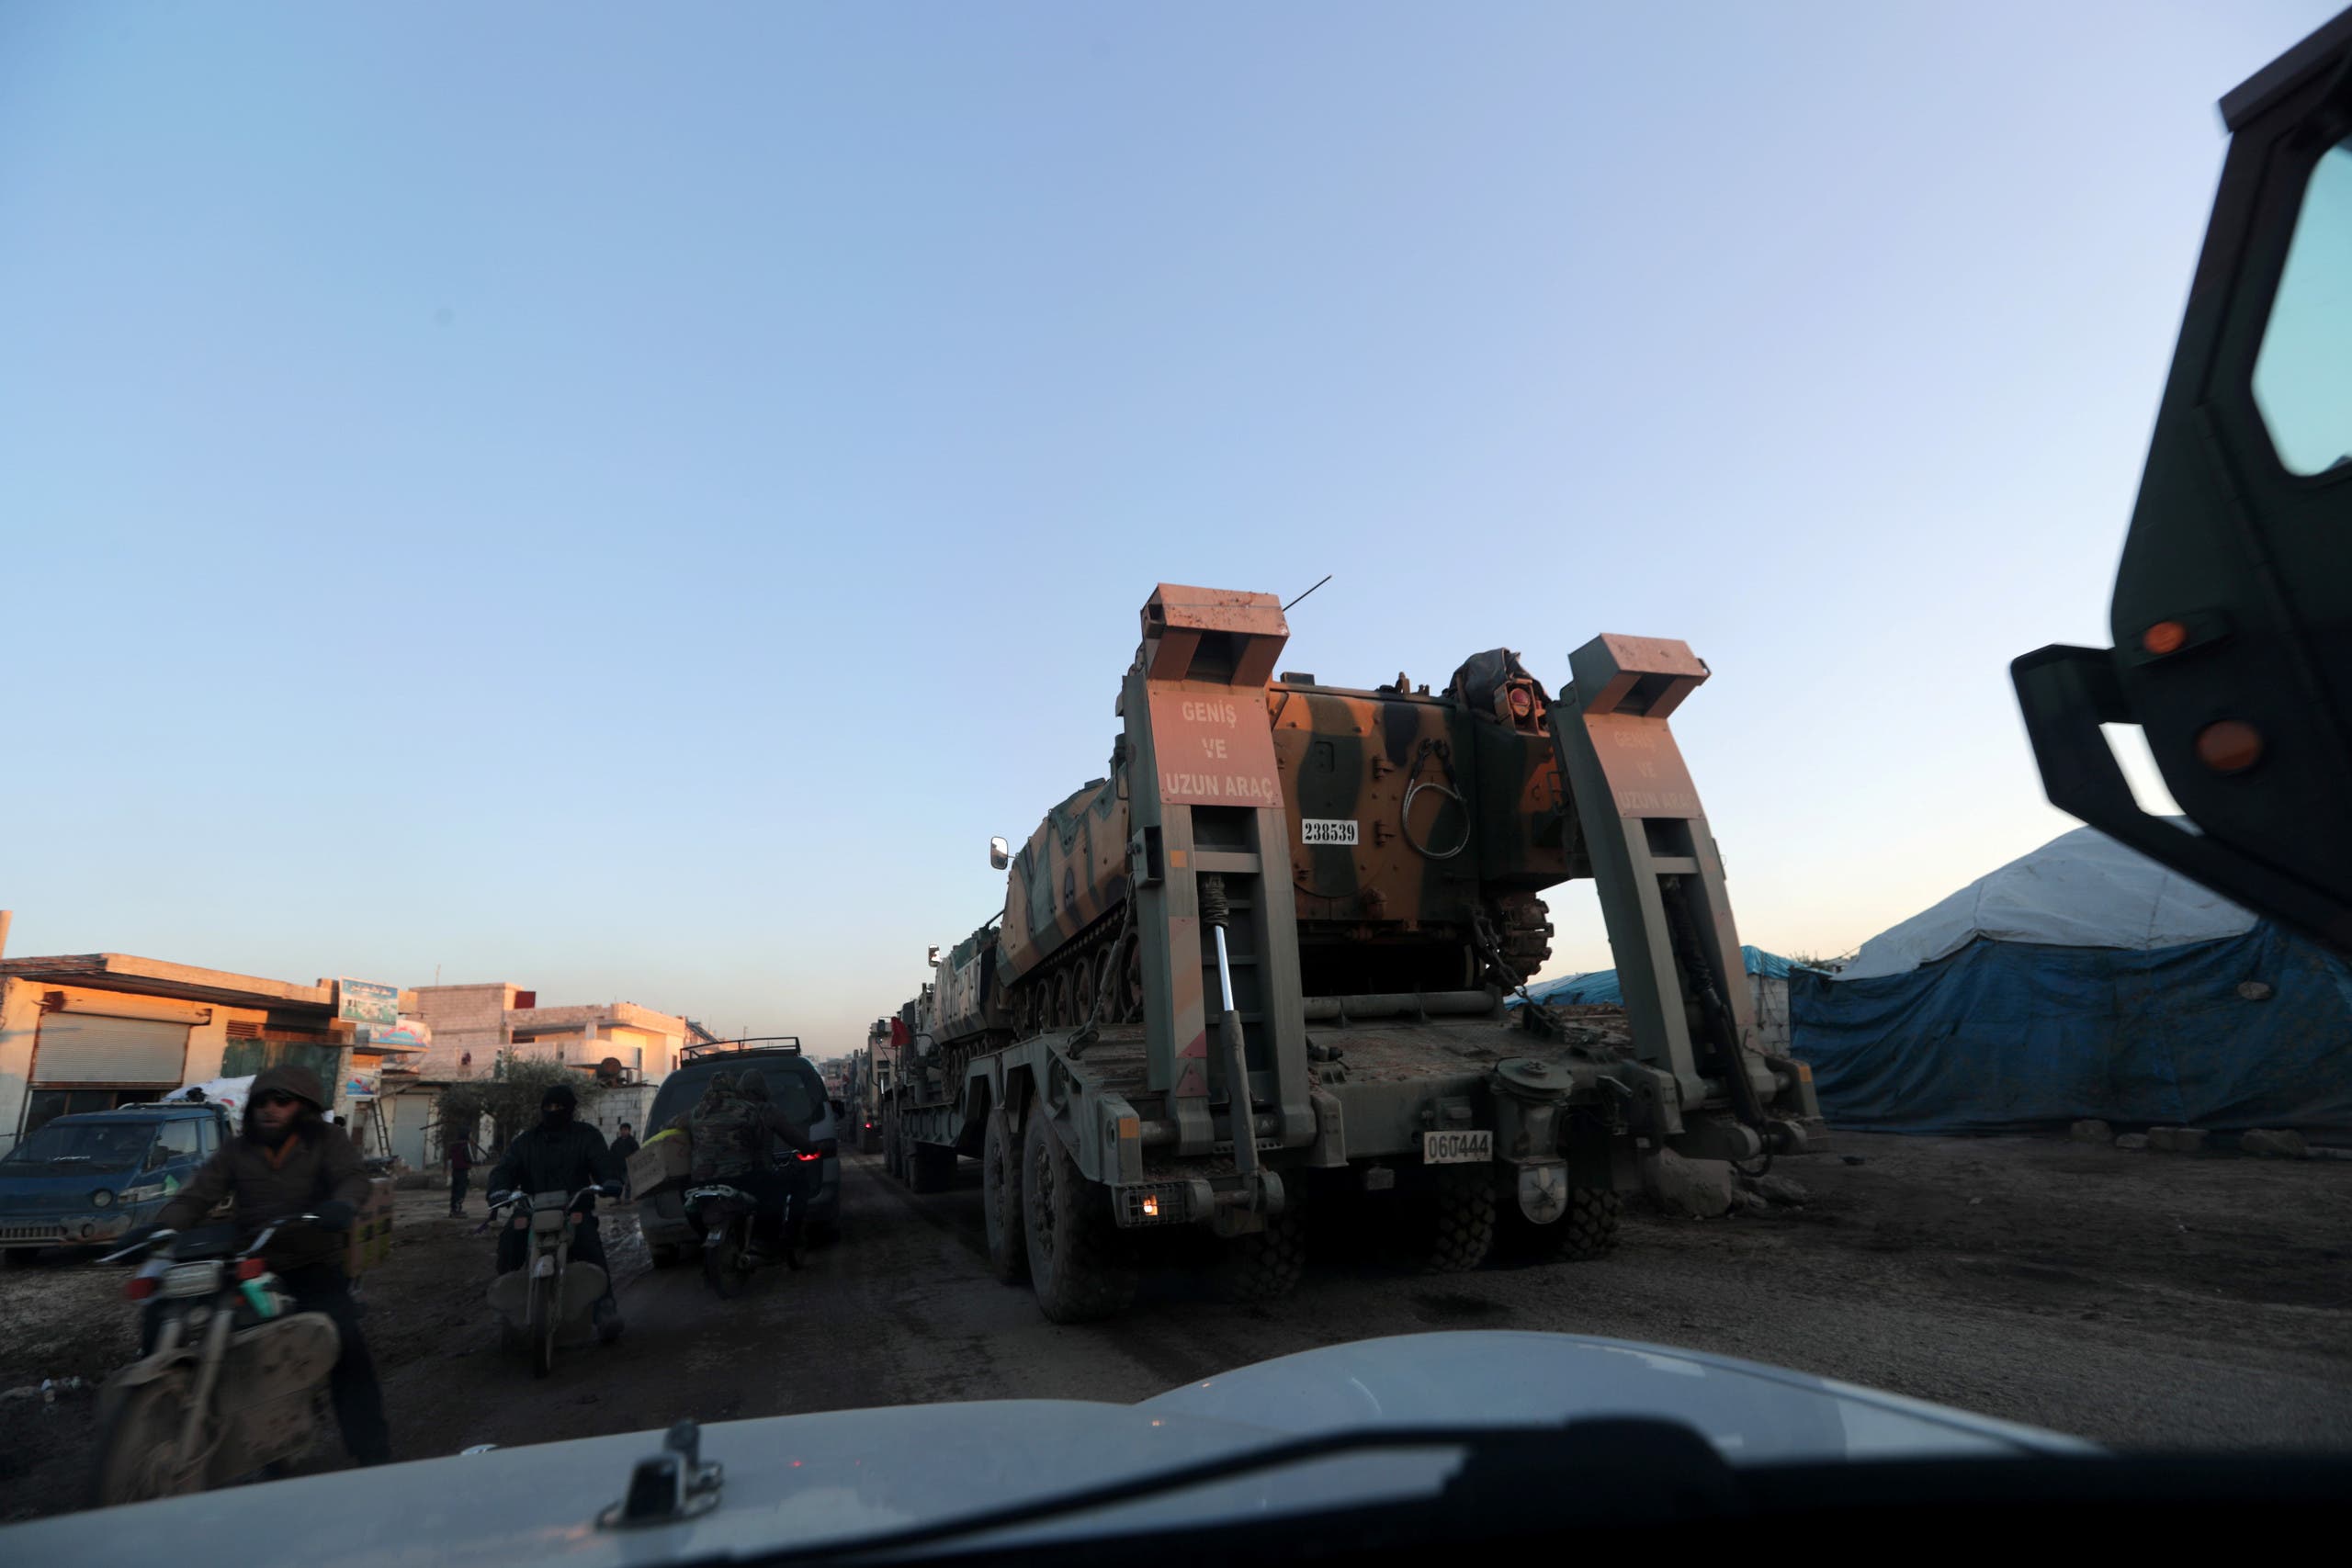 آلية عسكرية تركية تدخل سوريا مساء الأحد